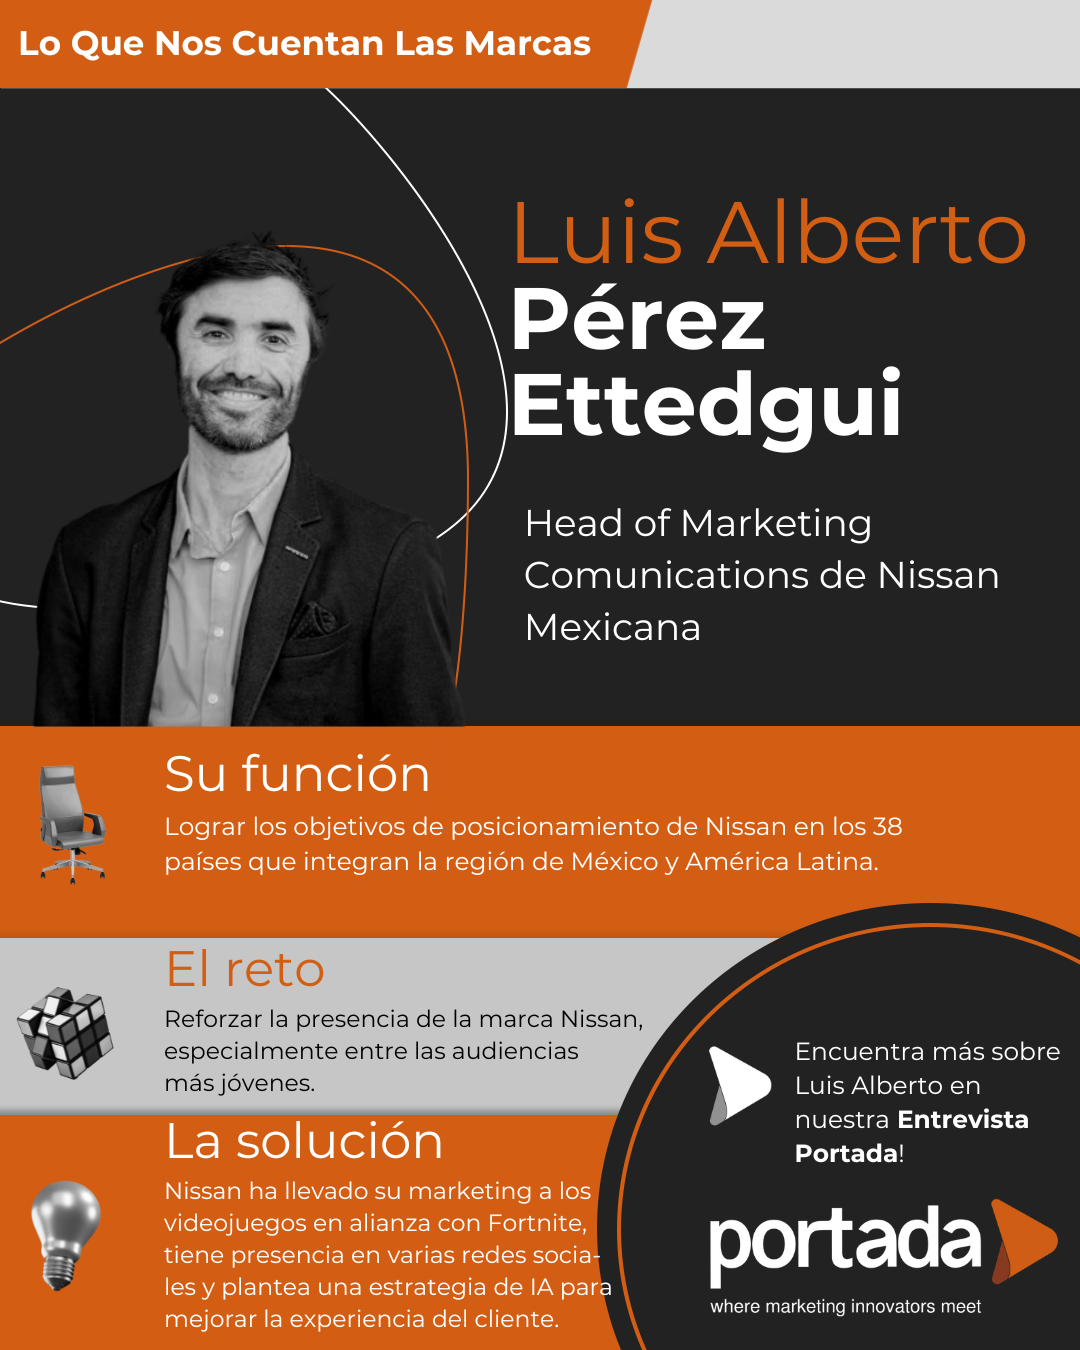 Luis Alberto Pérez Ettedgui: IA, videojuegos y redes sociales, el marketing de vanguardia de Nissan